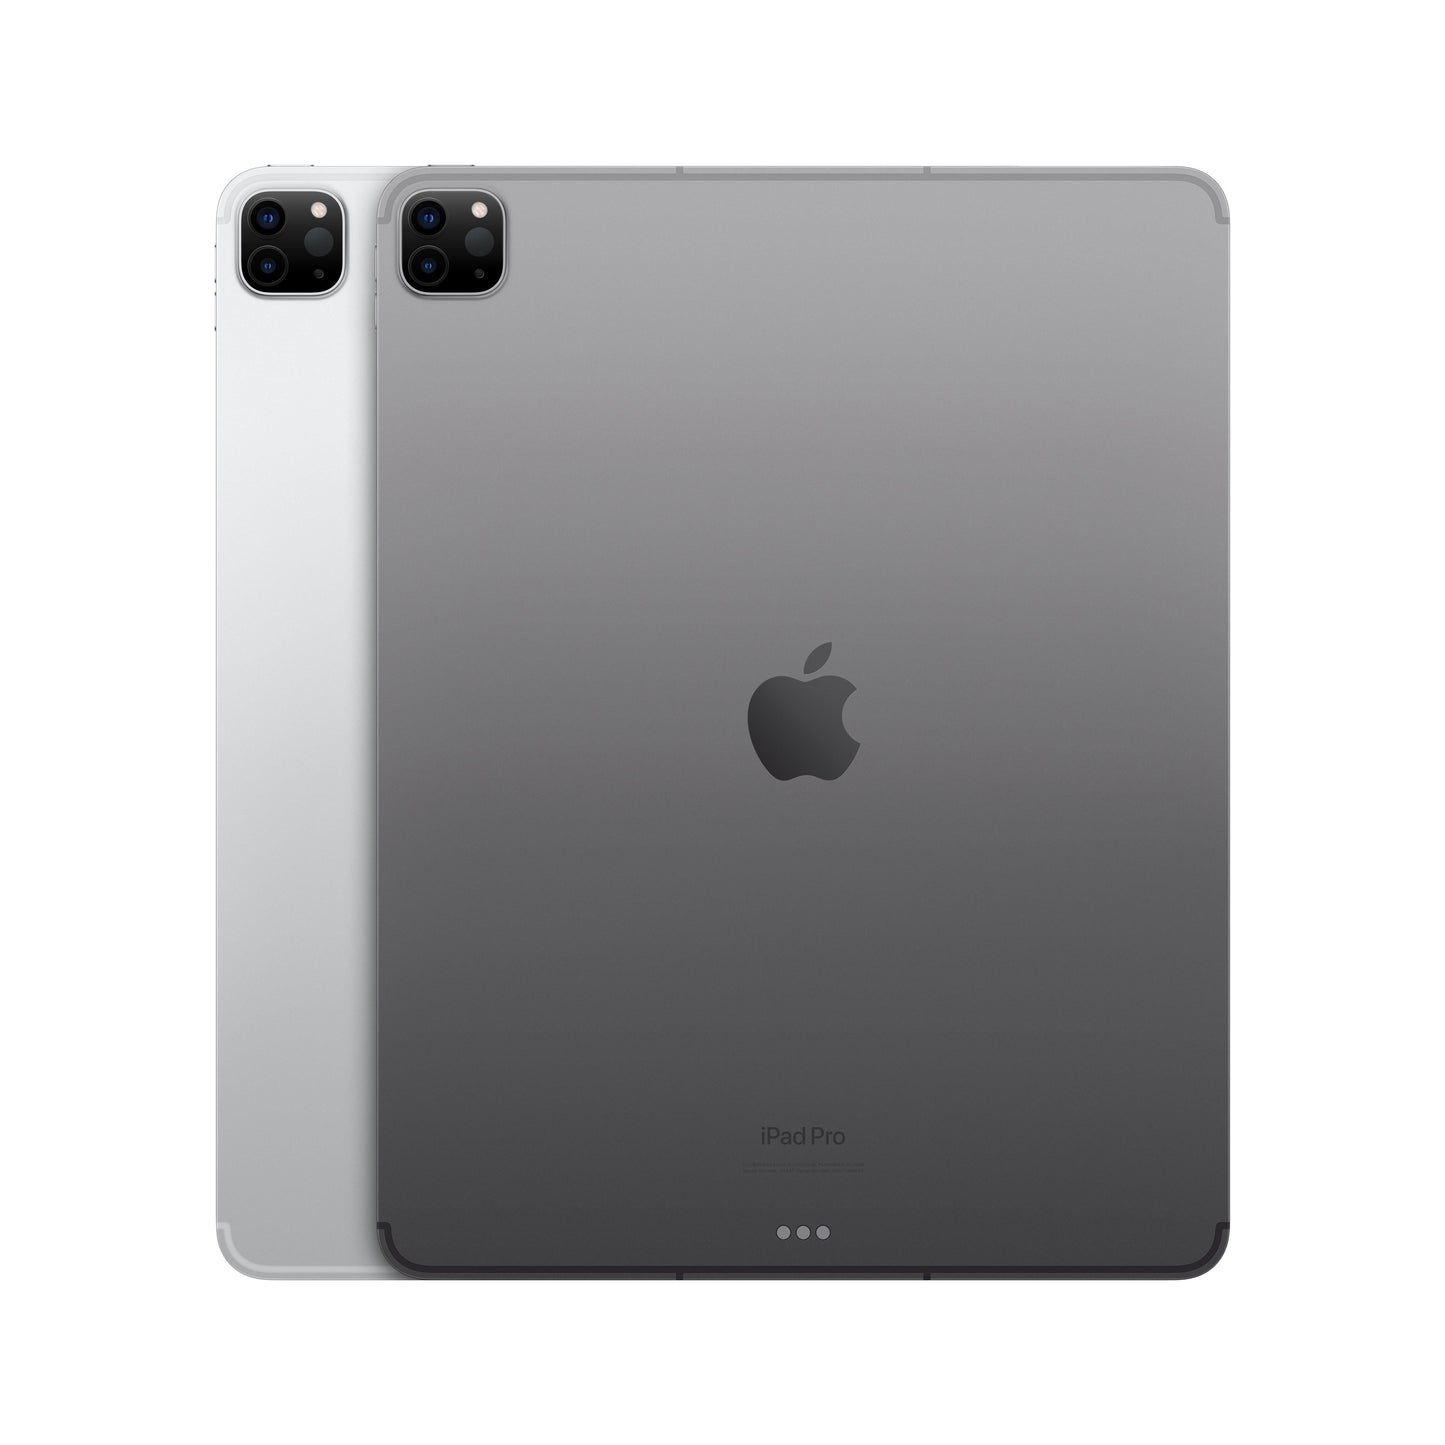 2022 12.9-inch iPad Pro Wi-Fi + Cellular 256GB - Silver (6th generation)